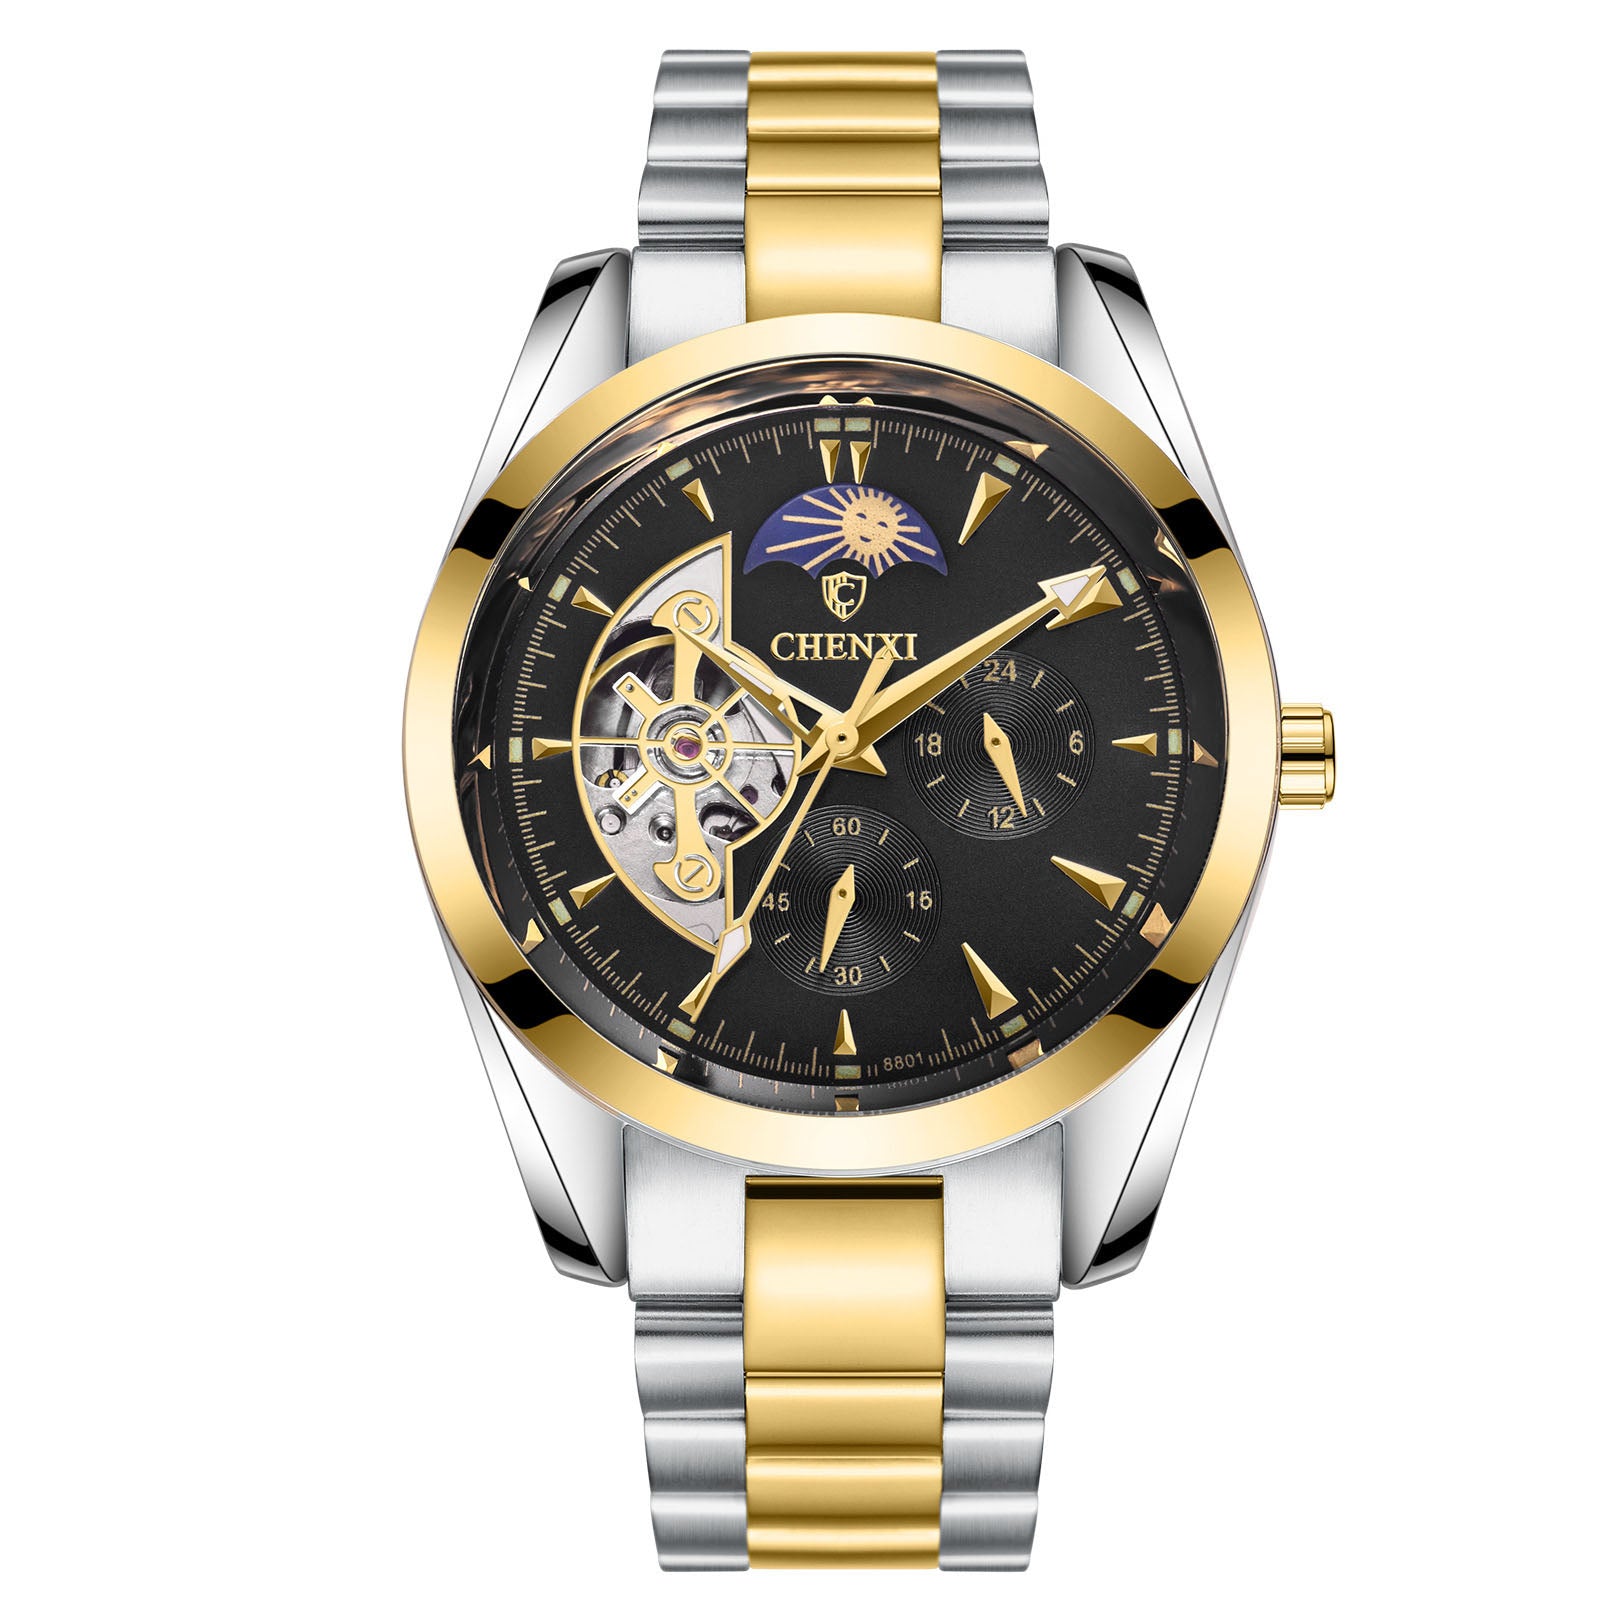 Men's Business Mechanical Watches - Customoi